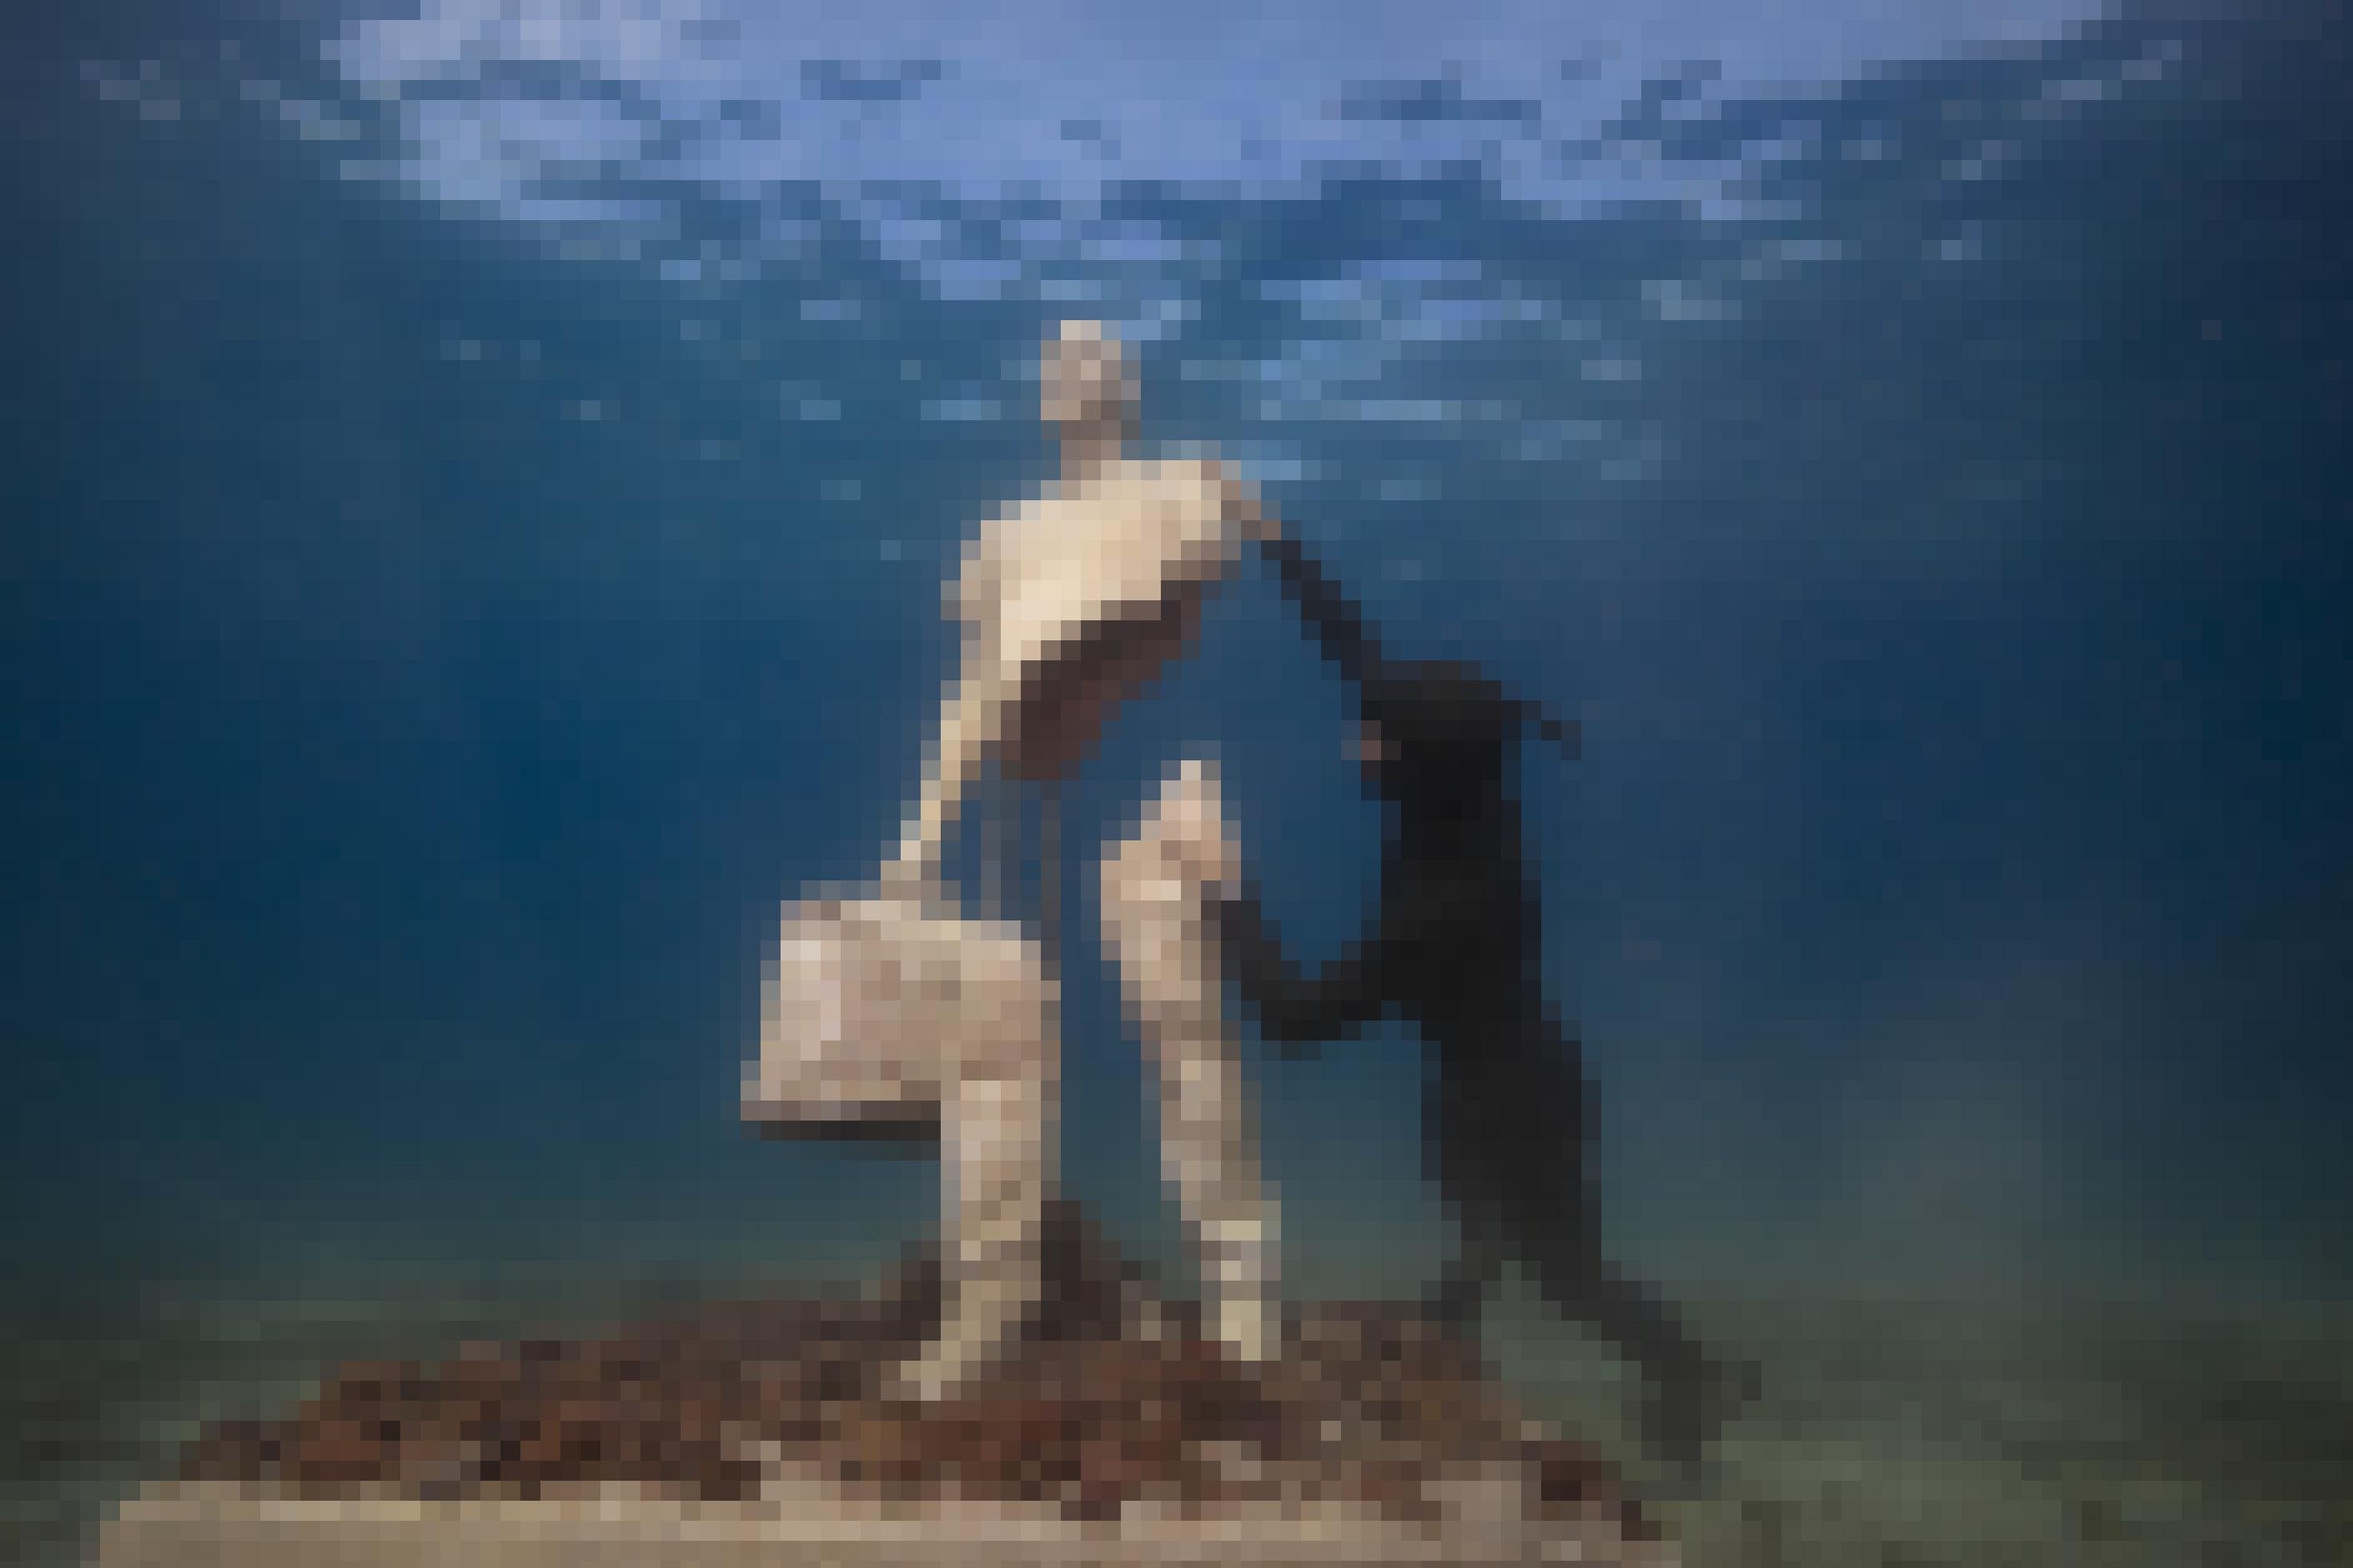 Die positionierte Statue auf dem Meeresgrund, neben ihr ein Taucher.